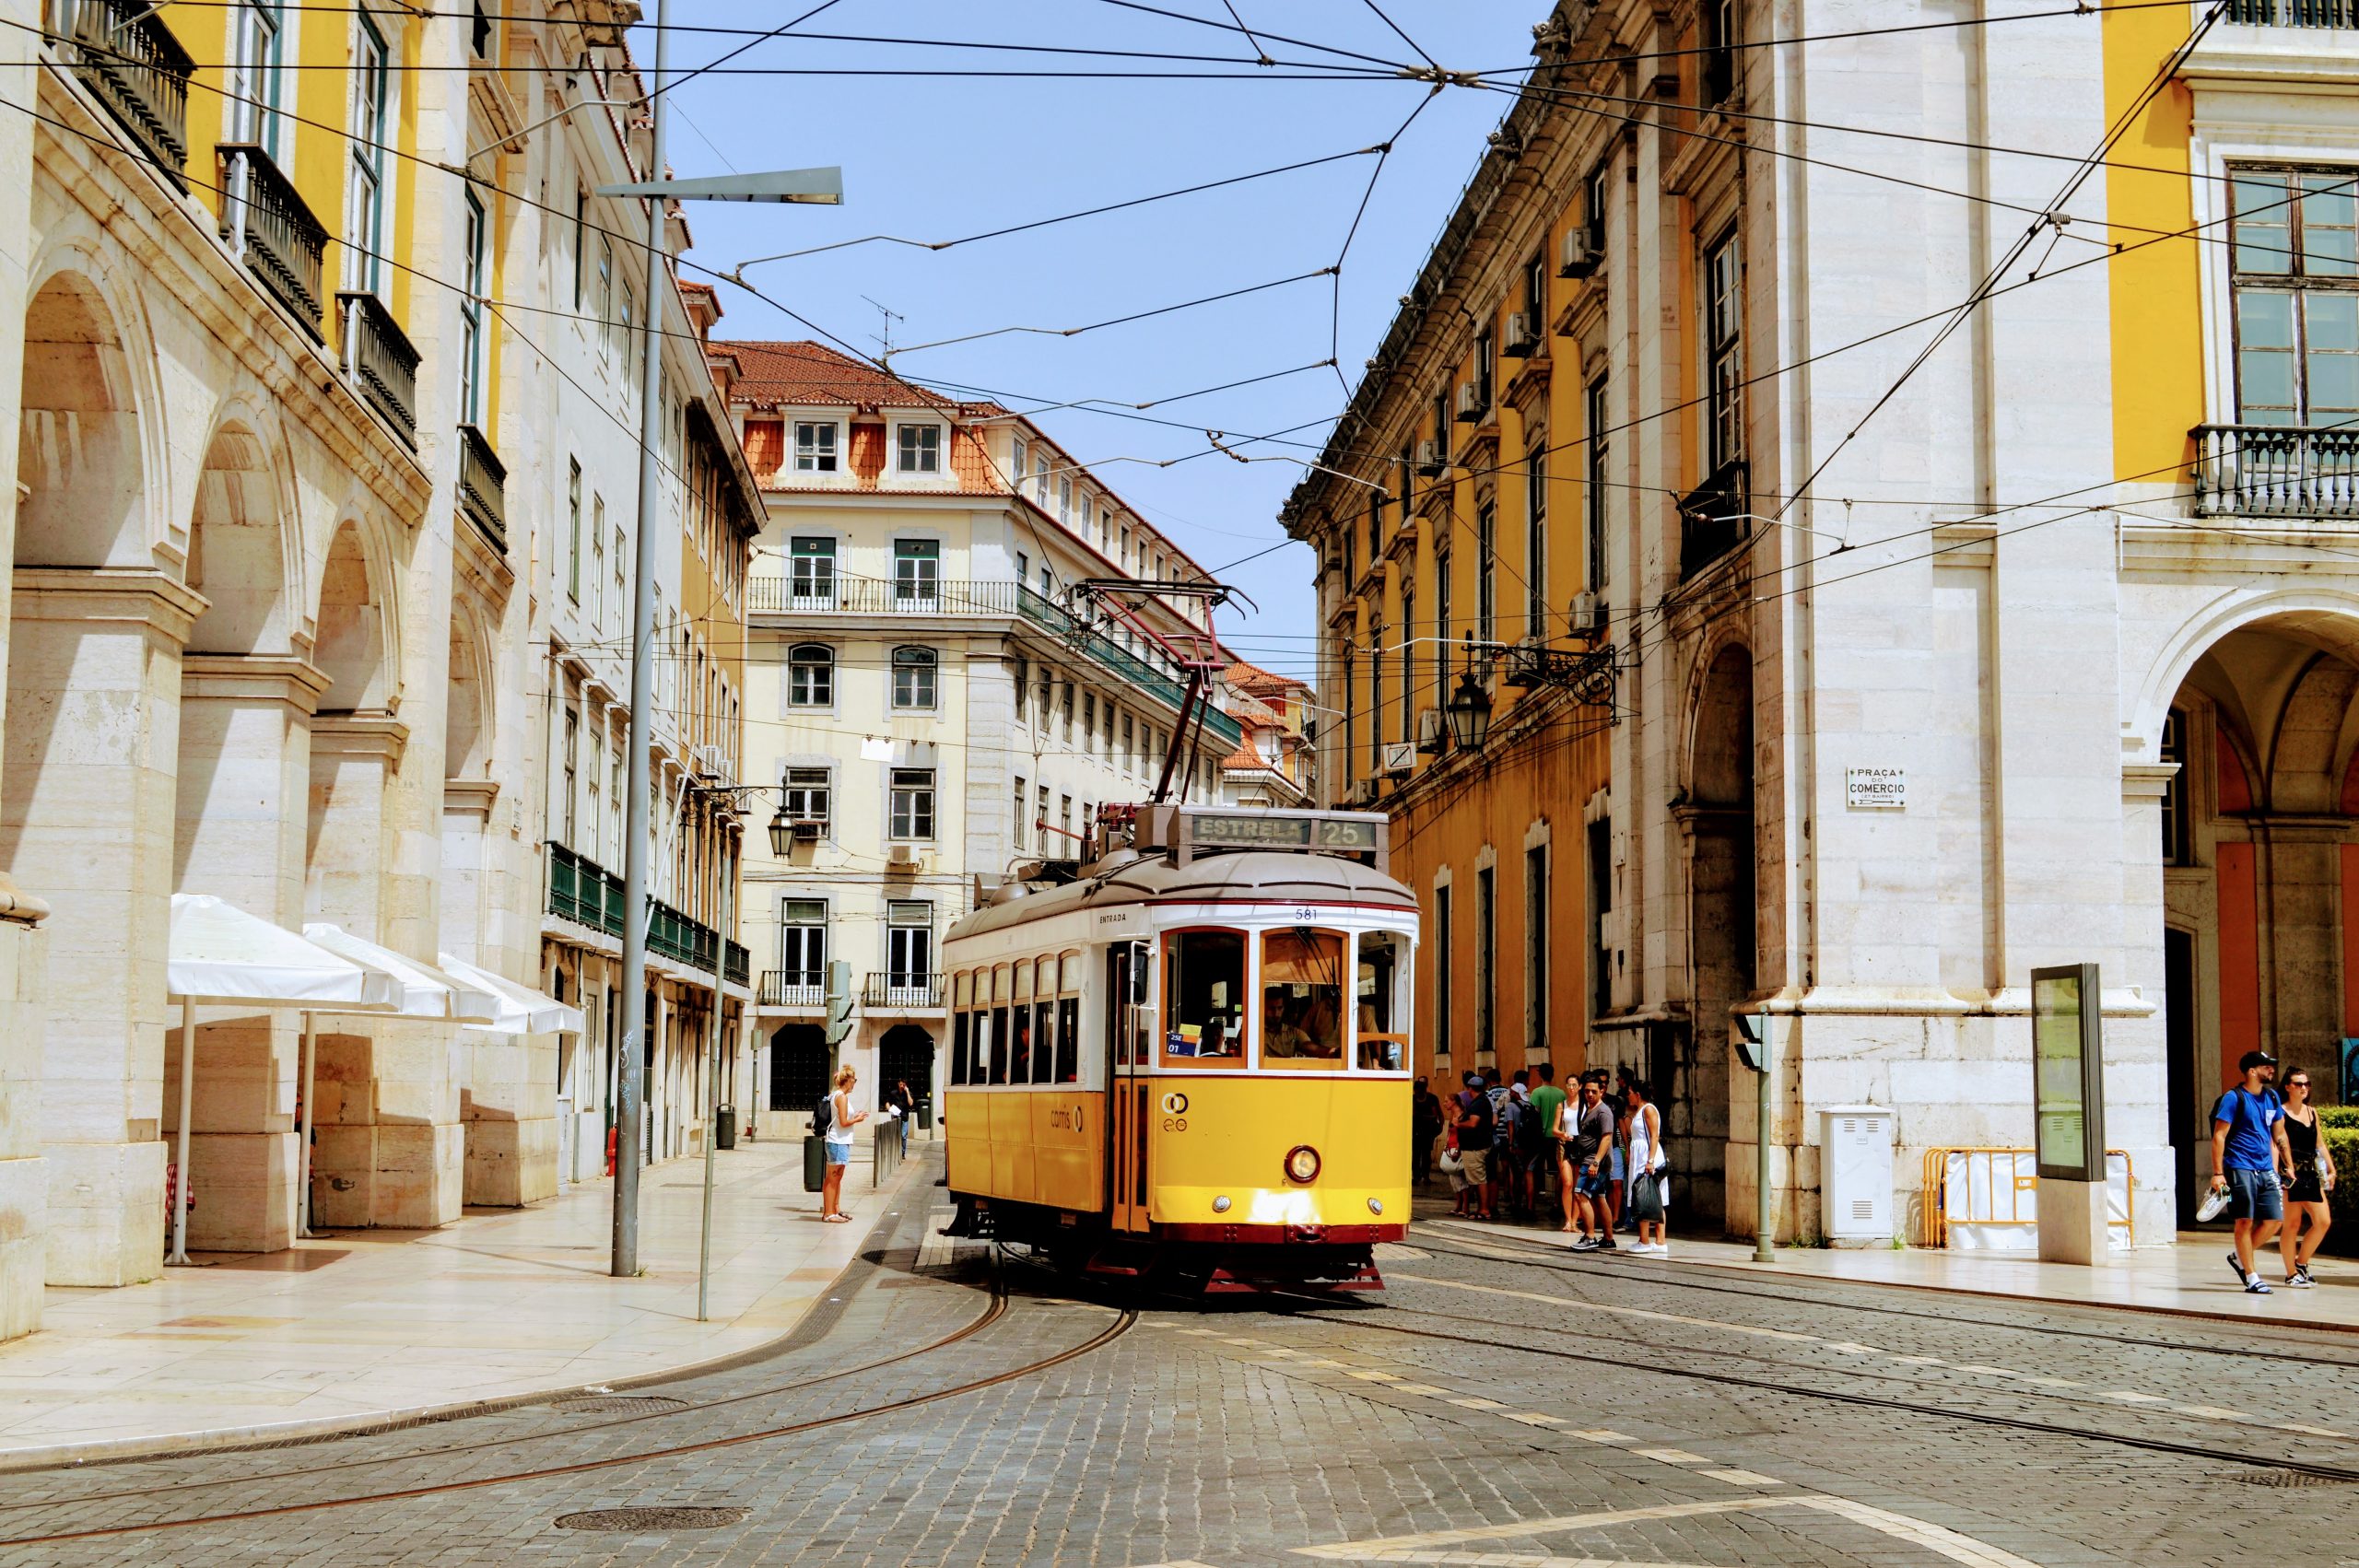 Cerca de 18% dos alojamentos arrendados em Portugal têm rendas acima de 500 euros